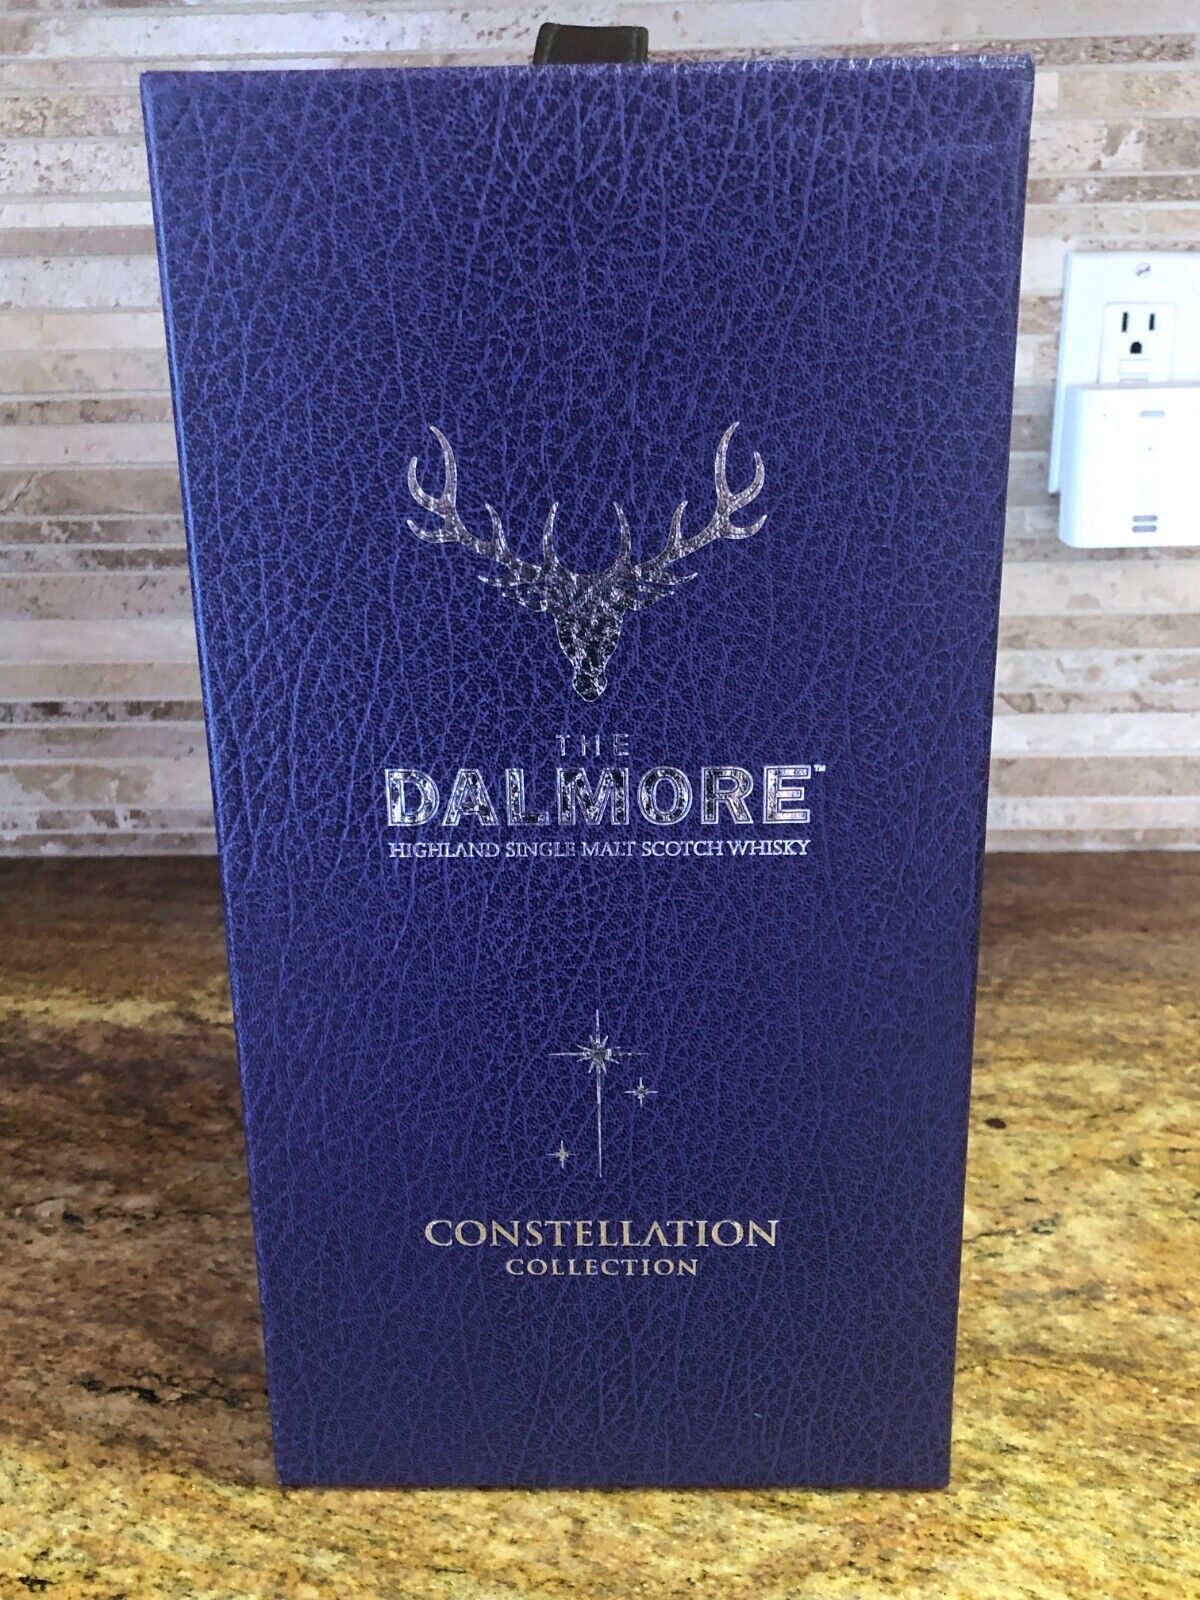 Rare The Dalmore Constellation Series Highland Single Malt Scotch Original Box